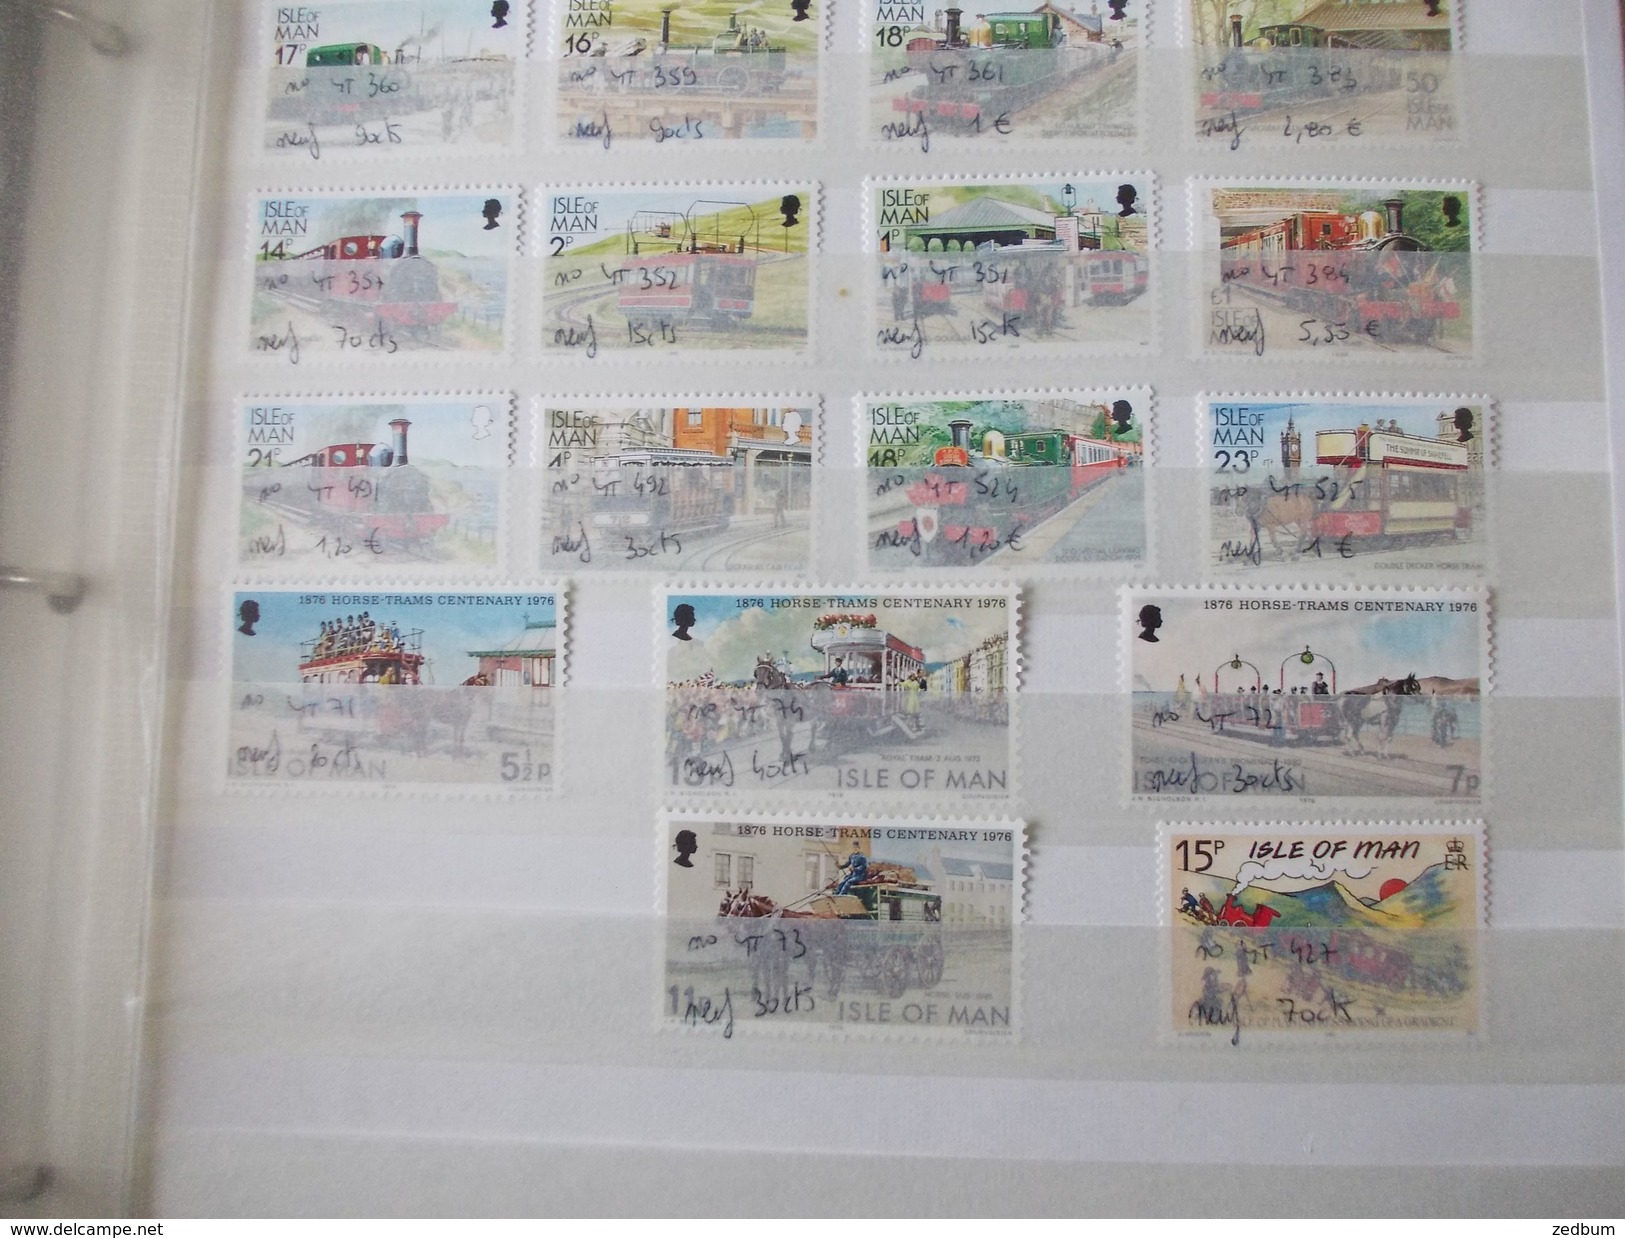 ALBUM 5 collection de timbres avec pour thème le chemin de fer train de tout pays valeur 447.50 &euro;